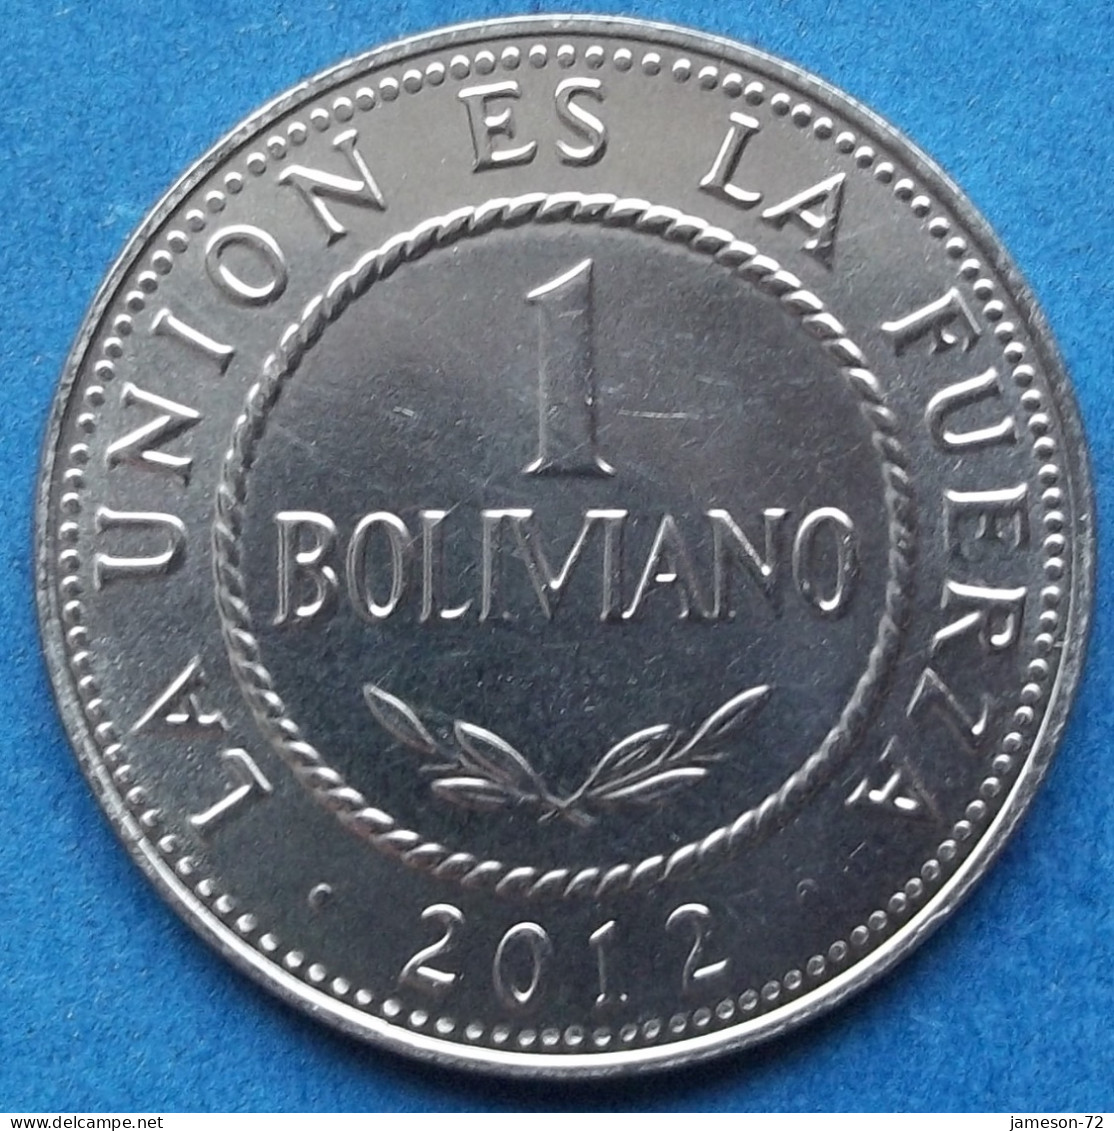 BOLIVIA - 1 Boliviano 2012 KM# 217 Monetary Reform (1987) - Edelweiss Coins - Bolivie